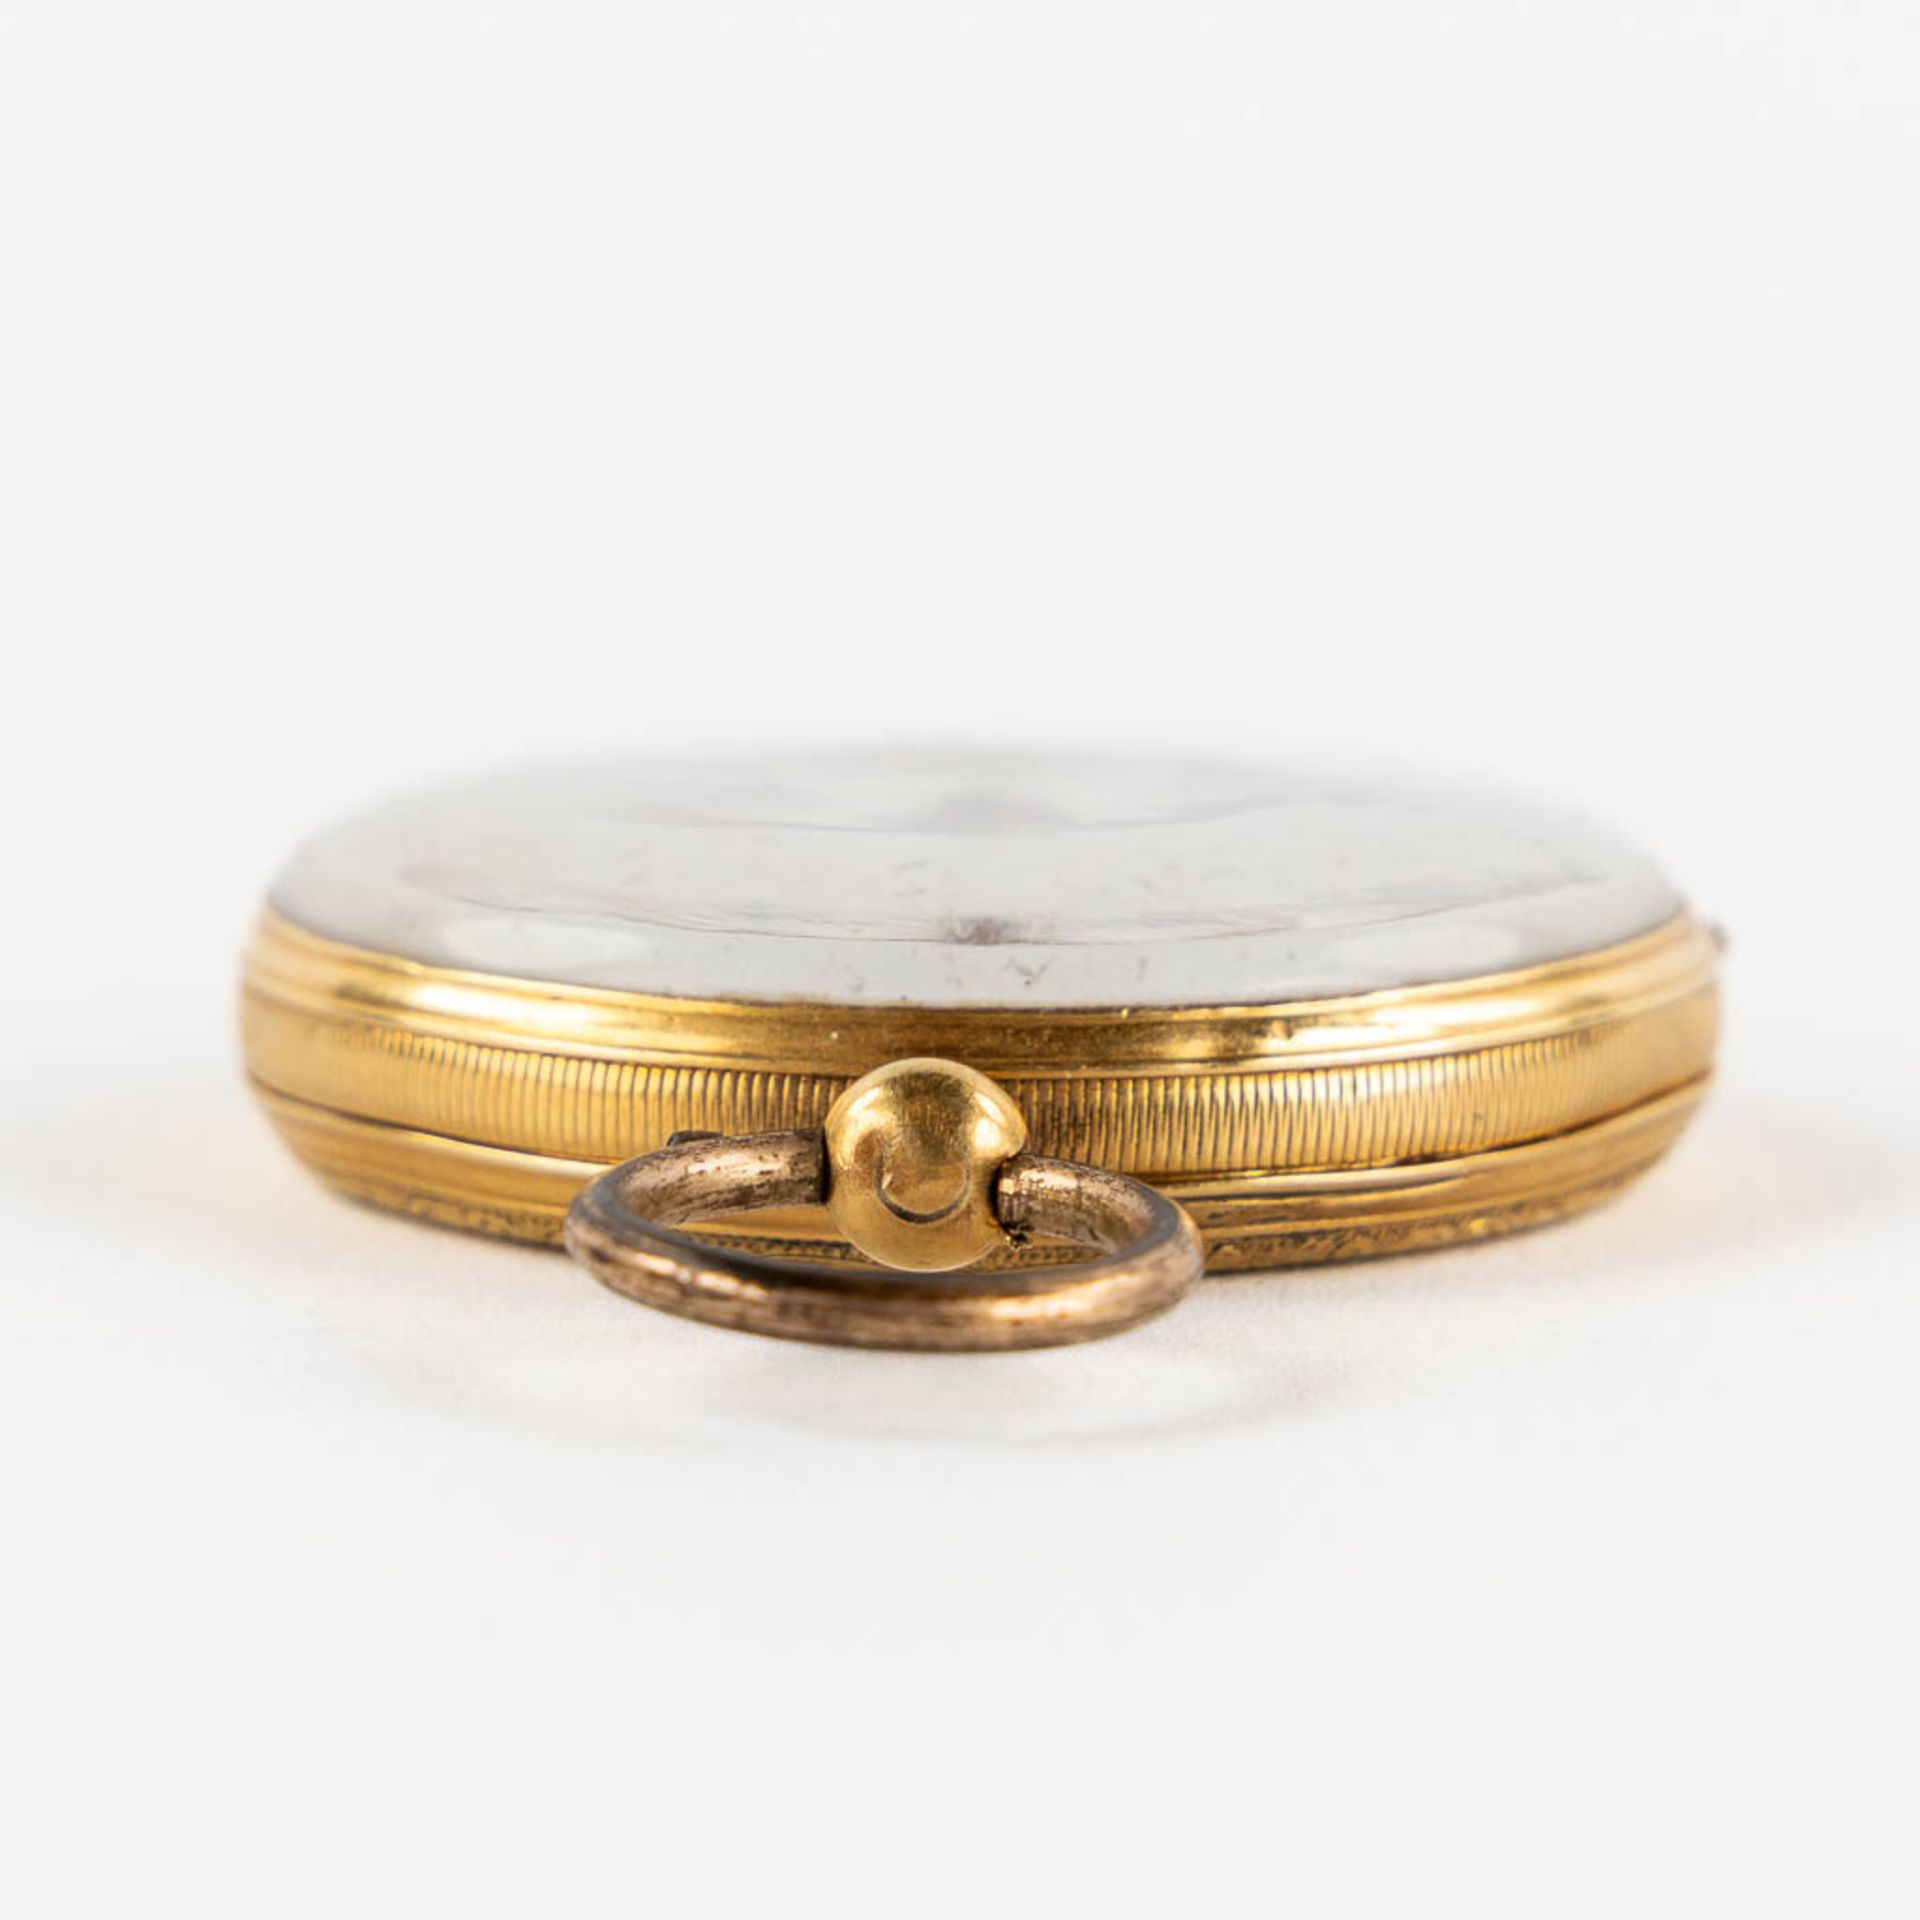 An antique pocket watch, 18kt yellow gold. Guioche image of a running horse. (W:4,3 x H:6,3 cm) - Bild 8 aus 15